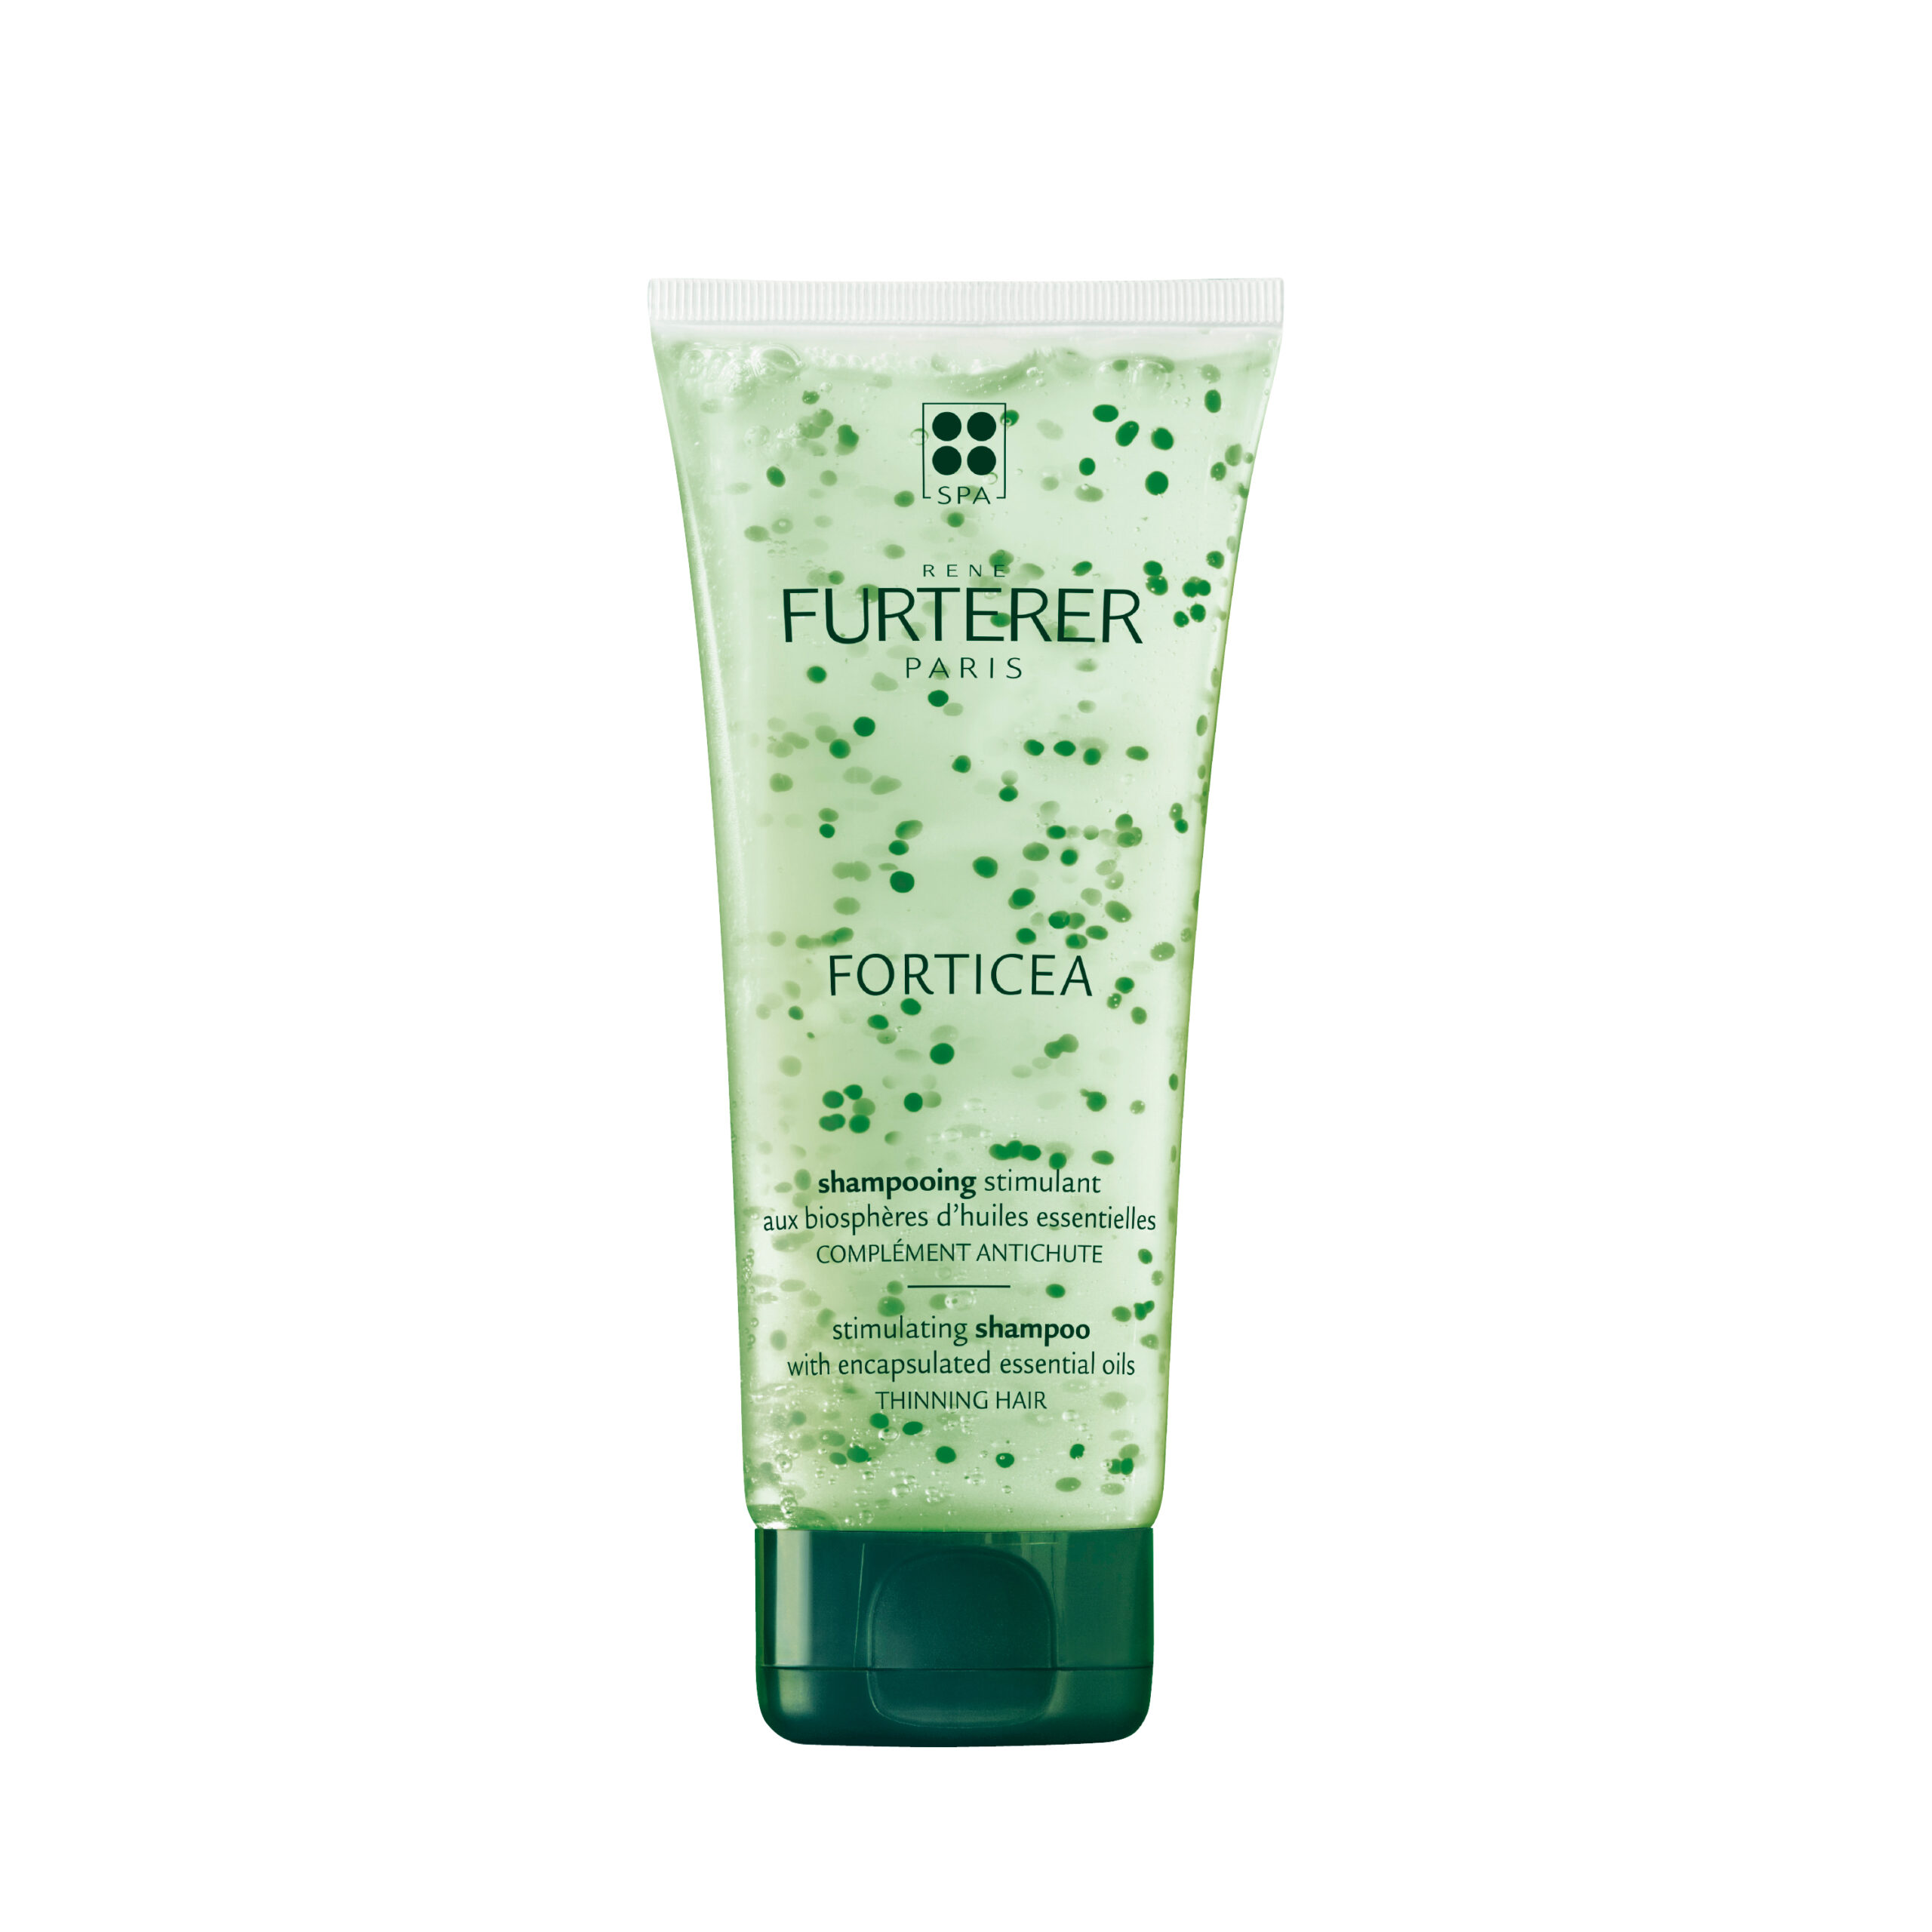 RENE FURTERER forticea stimulating shampoo 200ml